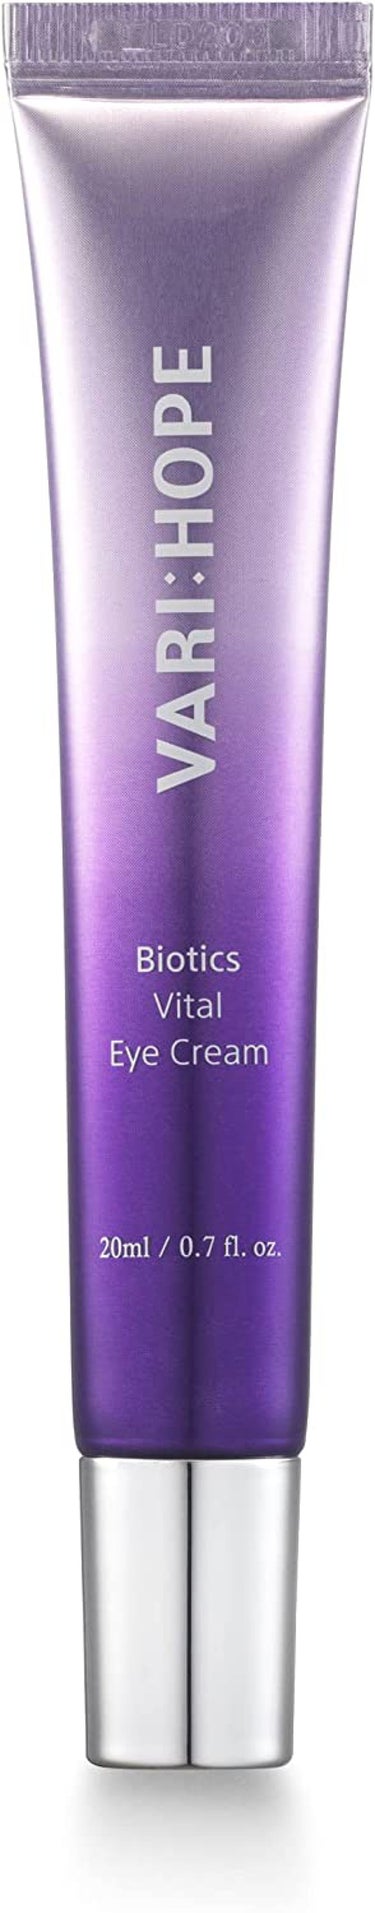 VARI:HOPE Biotics Vital Eye Cream